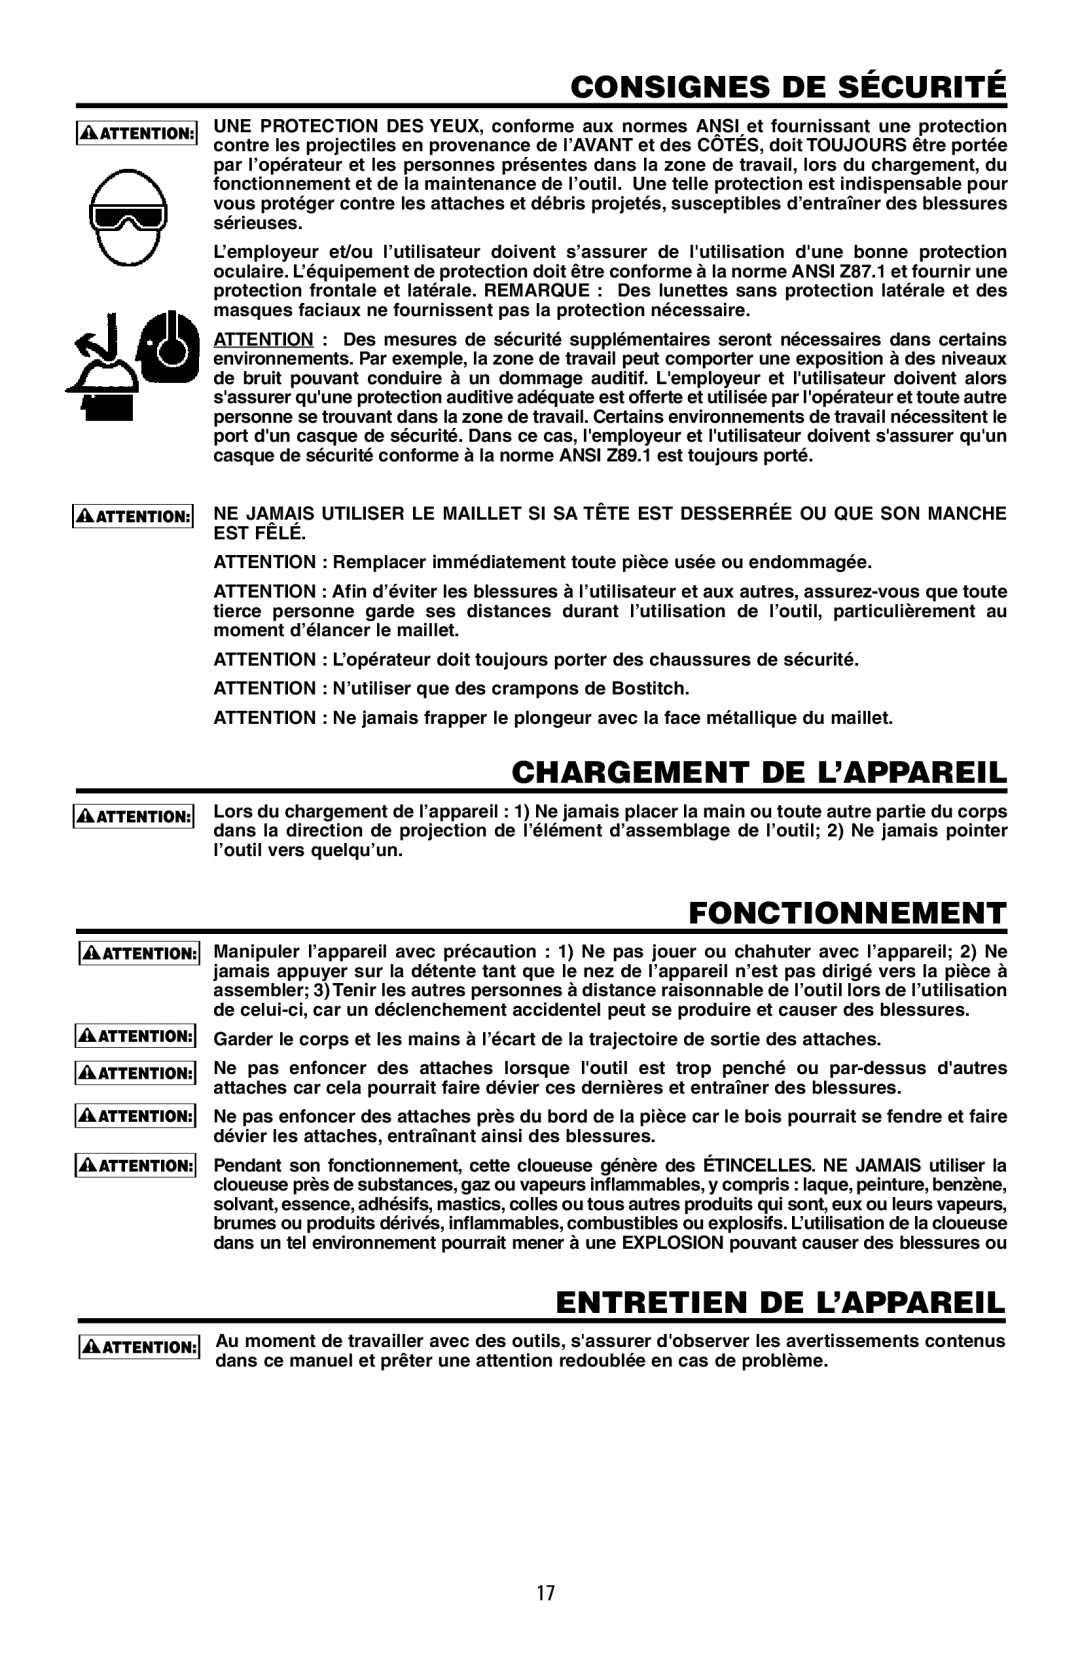 Intec MFN-200 manual Consignes De Sécurité, Chargement De L’Appareil, Fonctionnement, Entretien De L’Appareil 